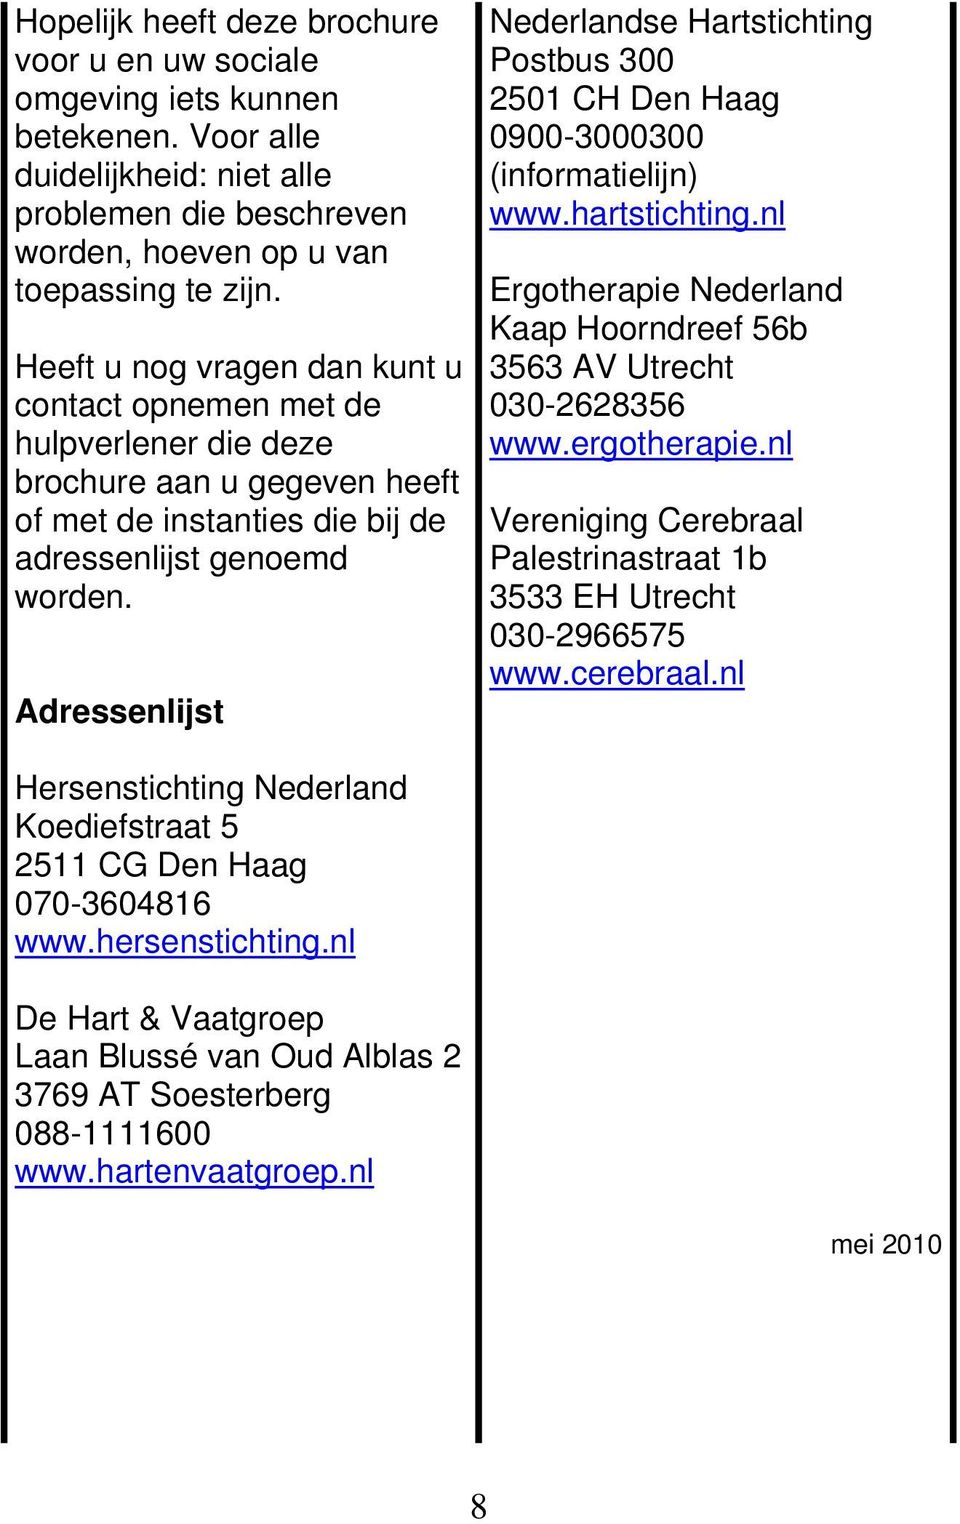 Adressenlijst Nederlandse Hartstichting Postbus 300 2501 CH Den Haag 0900-3000300 (informatielijn) www.hartstichting.nl Ergotherapie Nederland Kaap Hoorndreef 56b 3563 AV Utrecht 030-2628356 www.